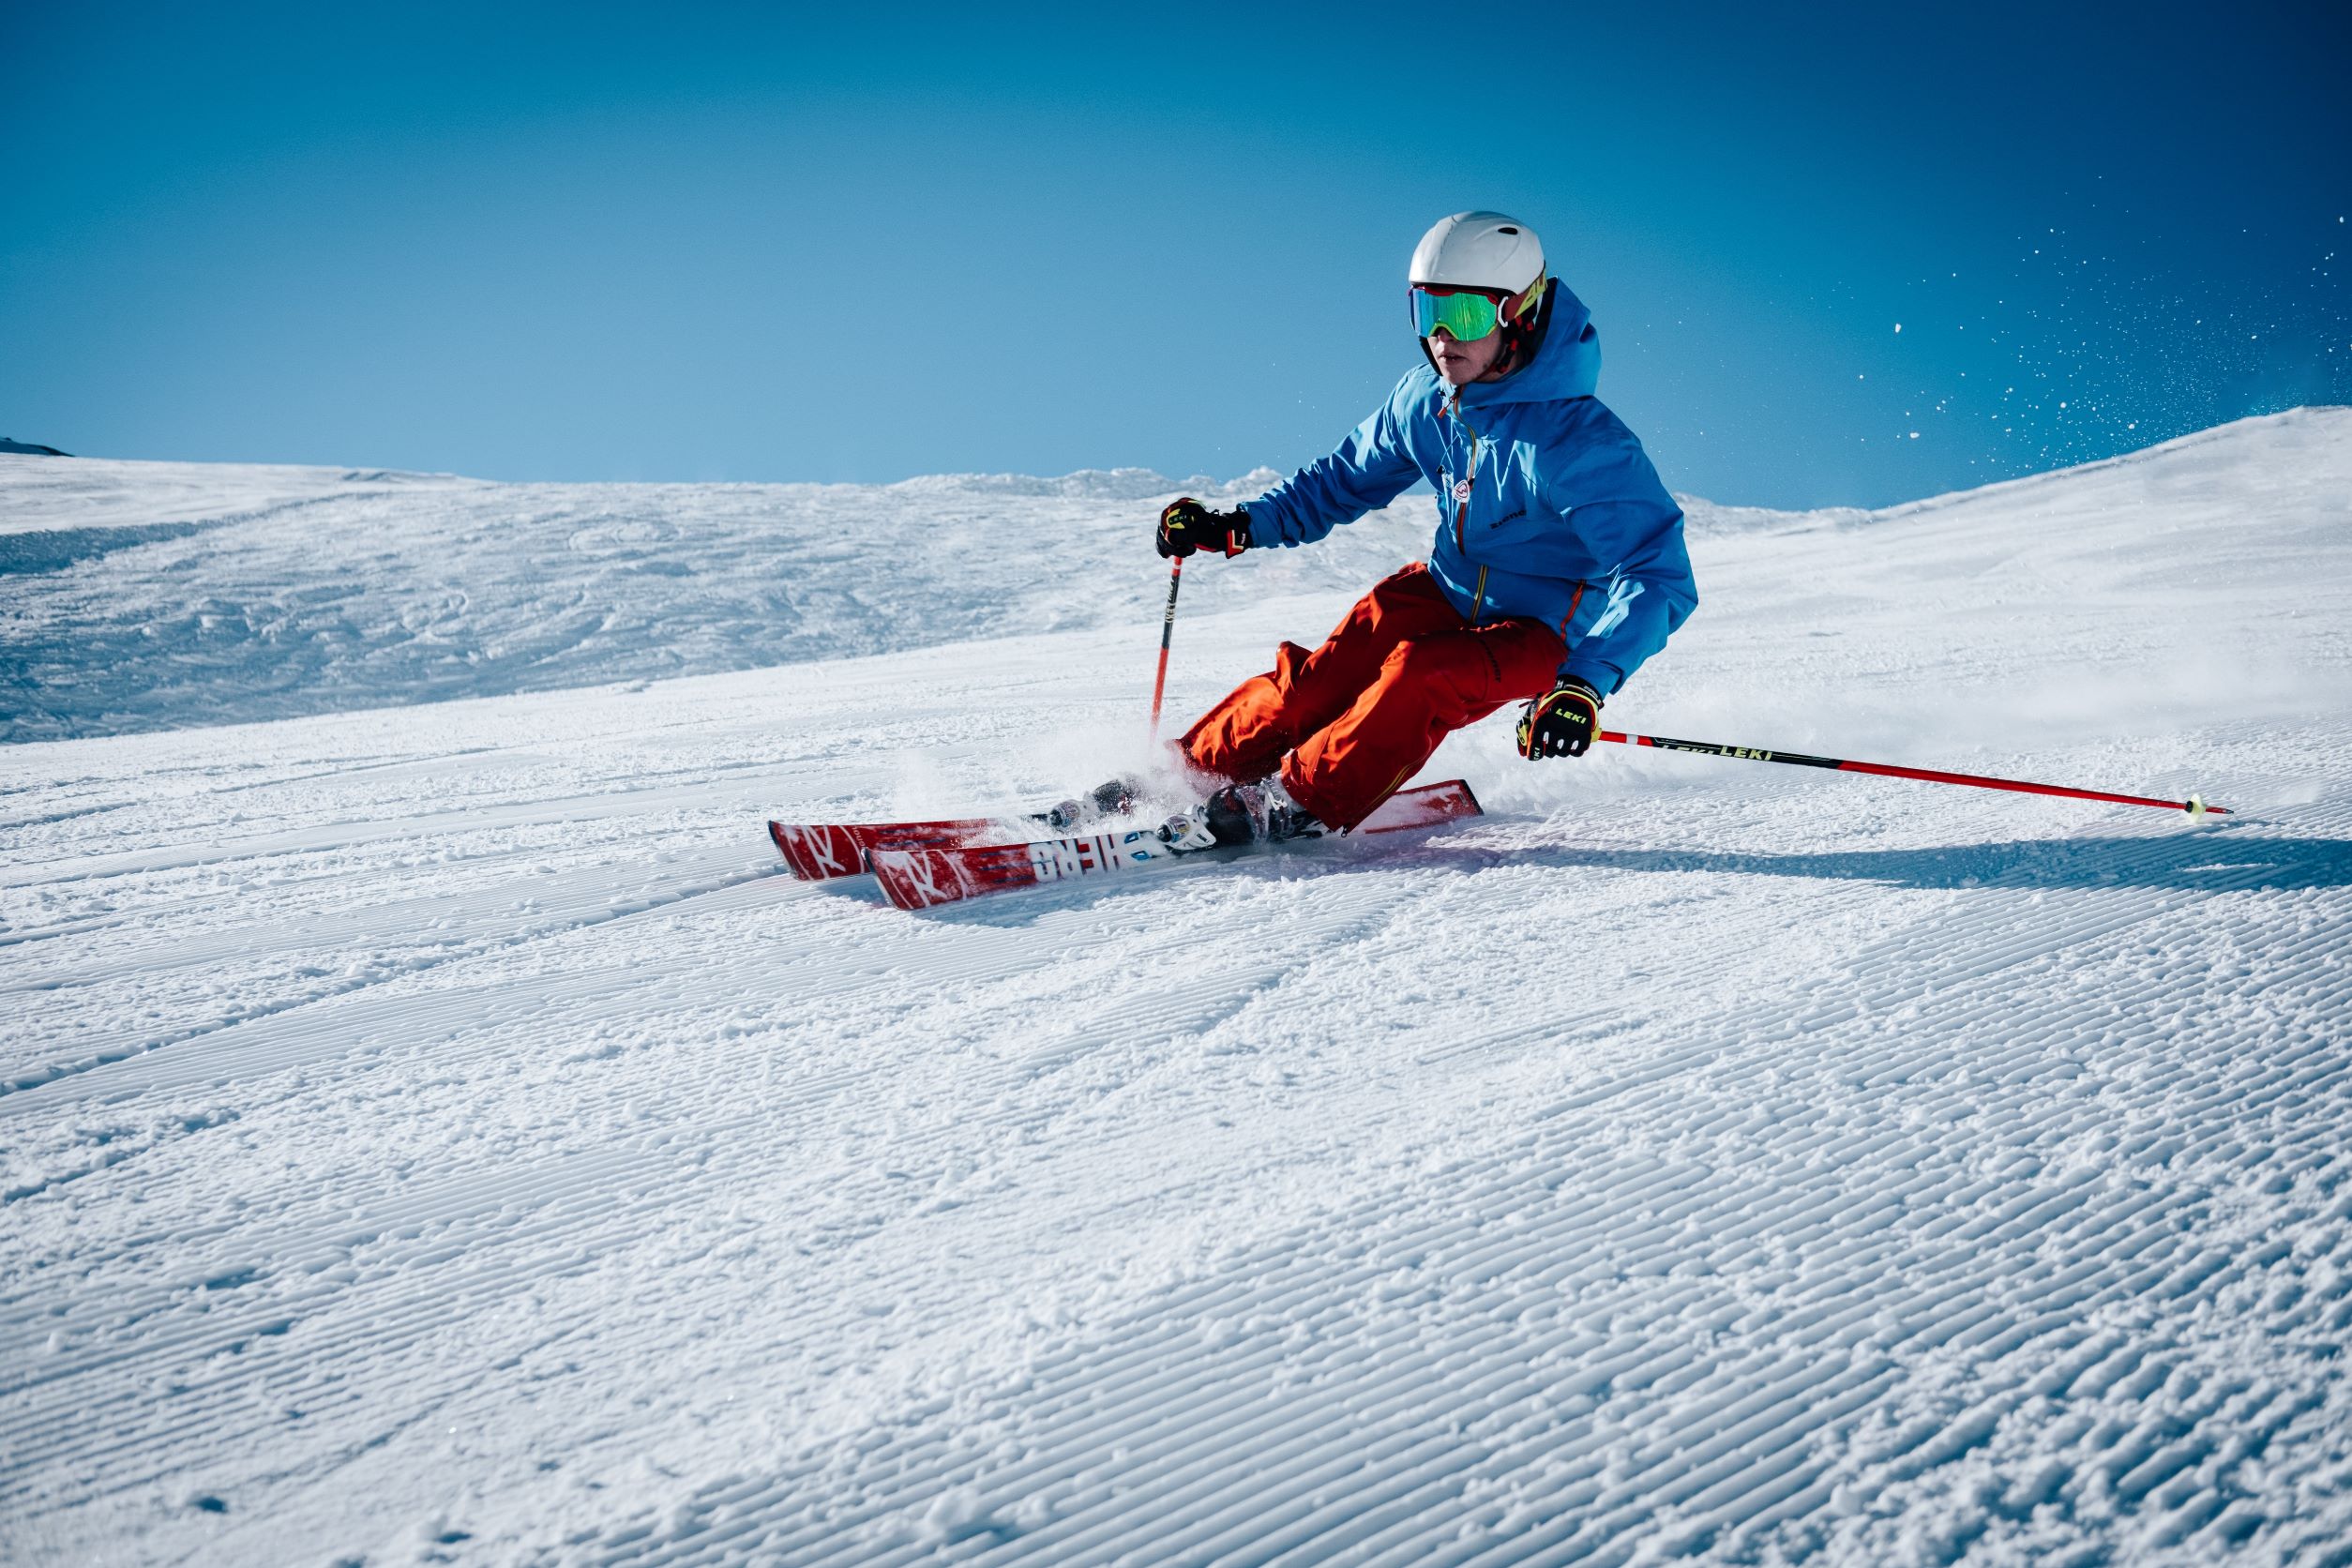 Comment anticiper son séjour au ski pour éviter les blessures ?